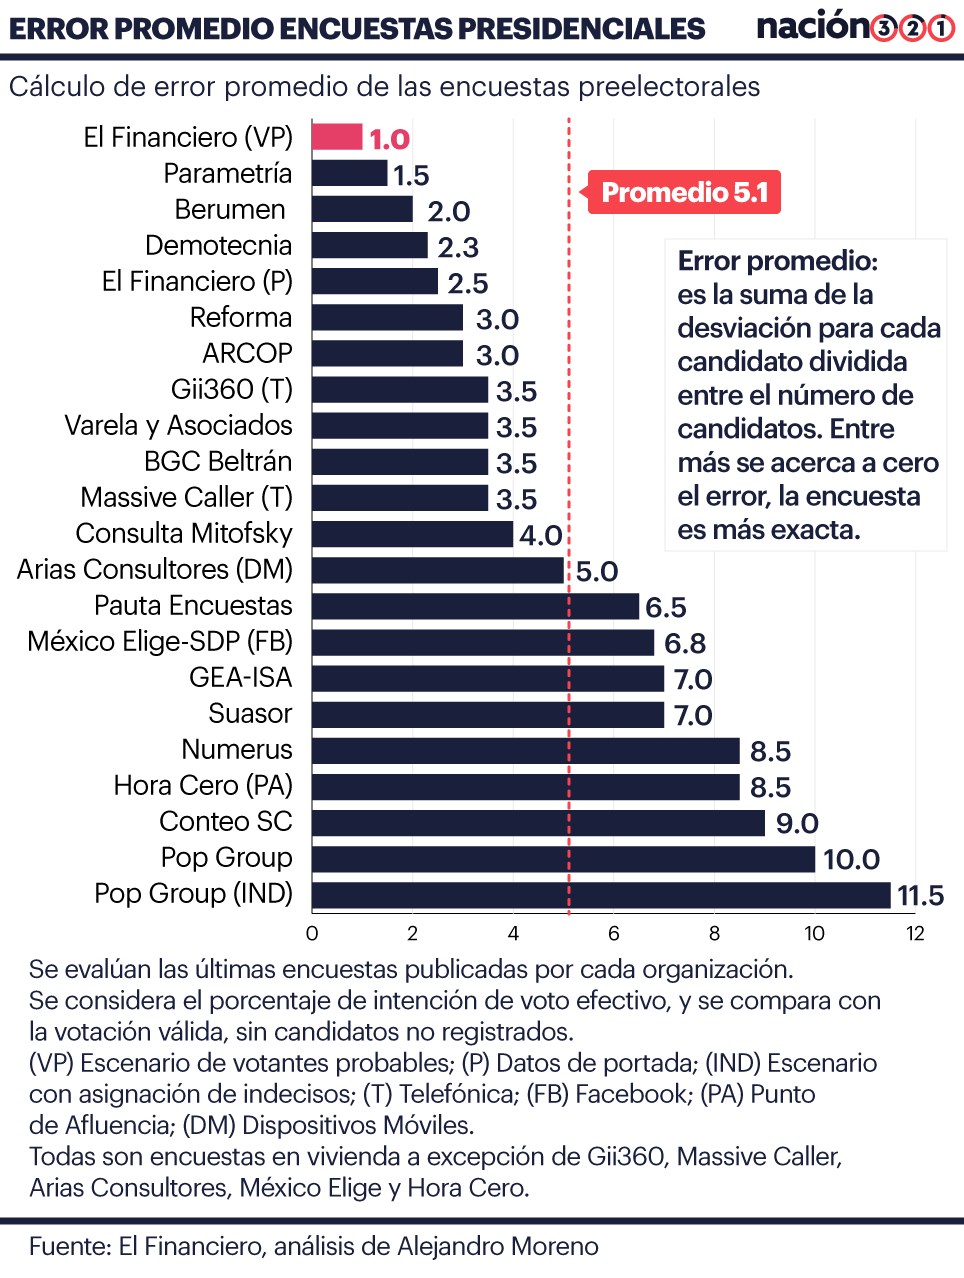 Análisis de las encuestas previas a la elección presidencial del 1 de julio de 2018 en El Financiero.